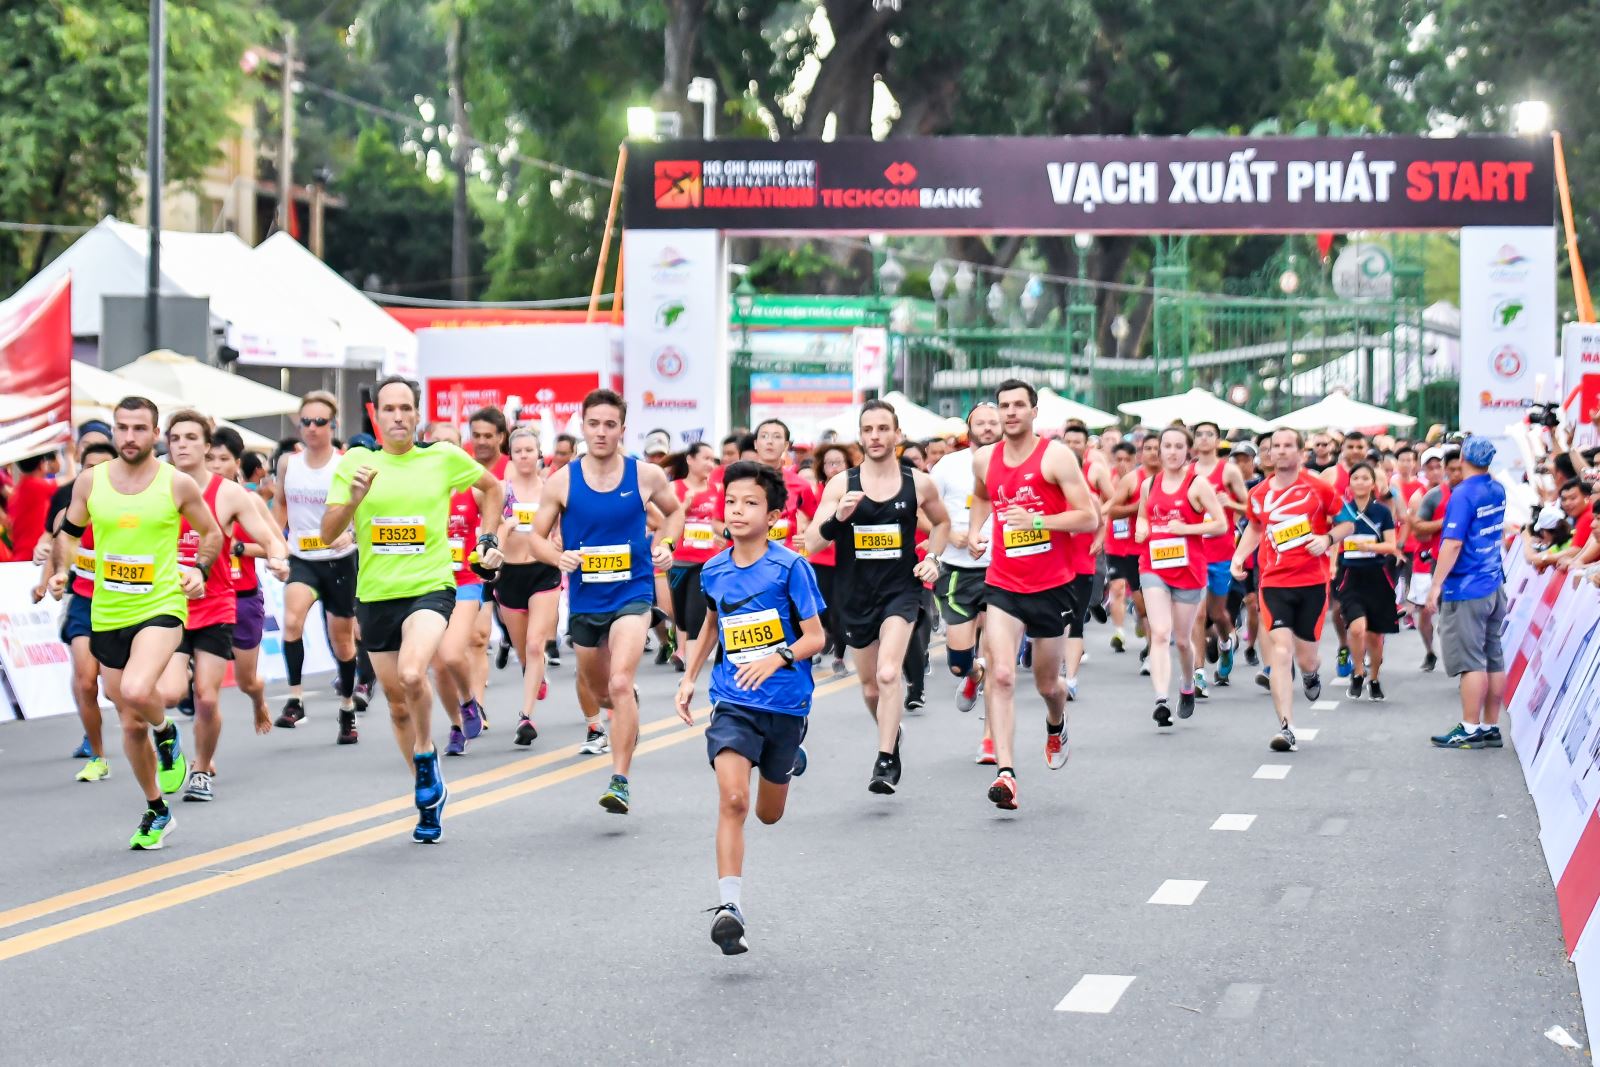 Lan tỏa cuộc thi chạy bộ vì cộng đồng và trẻ sơ sinh | baotintuc.vn